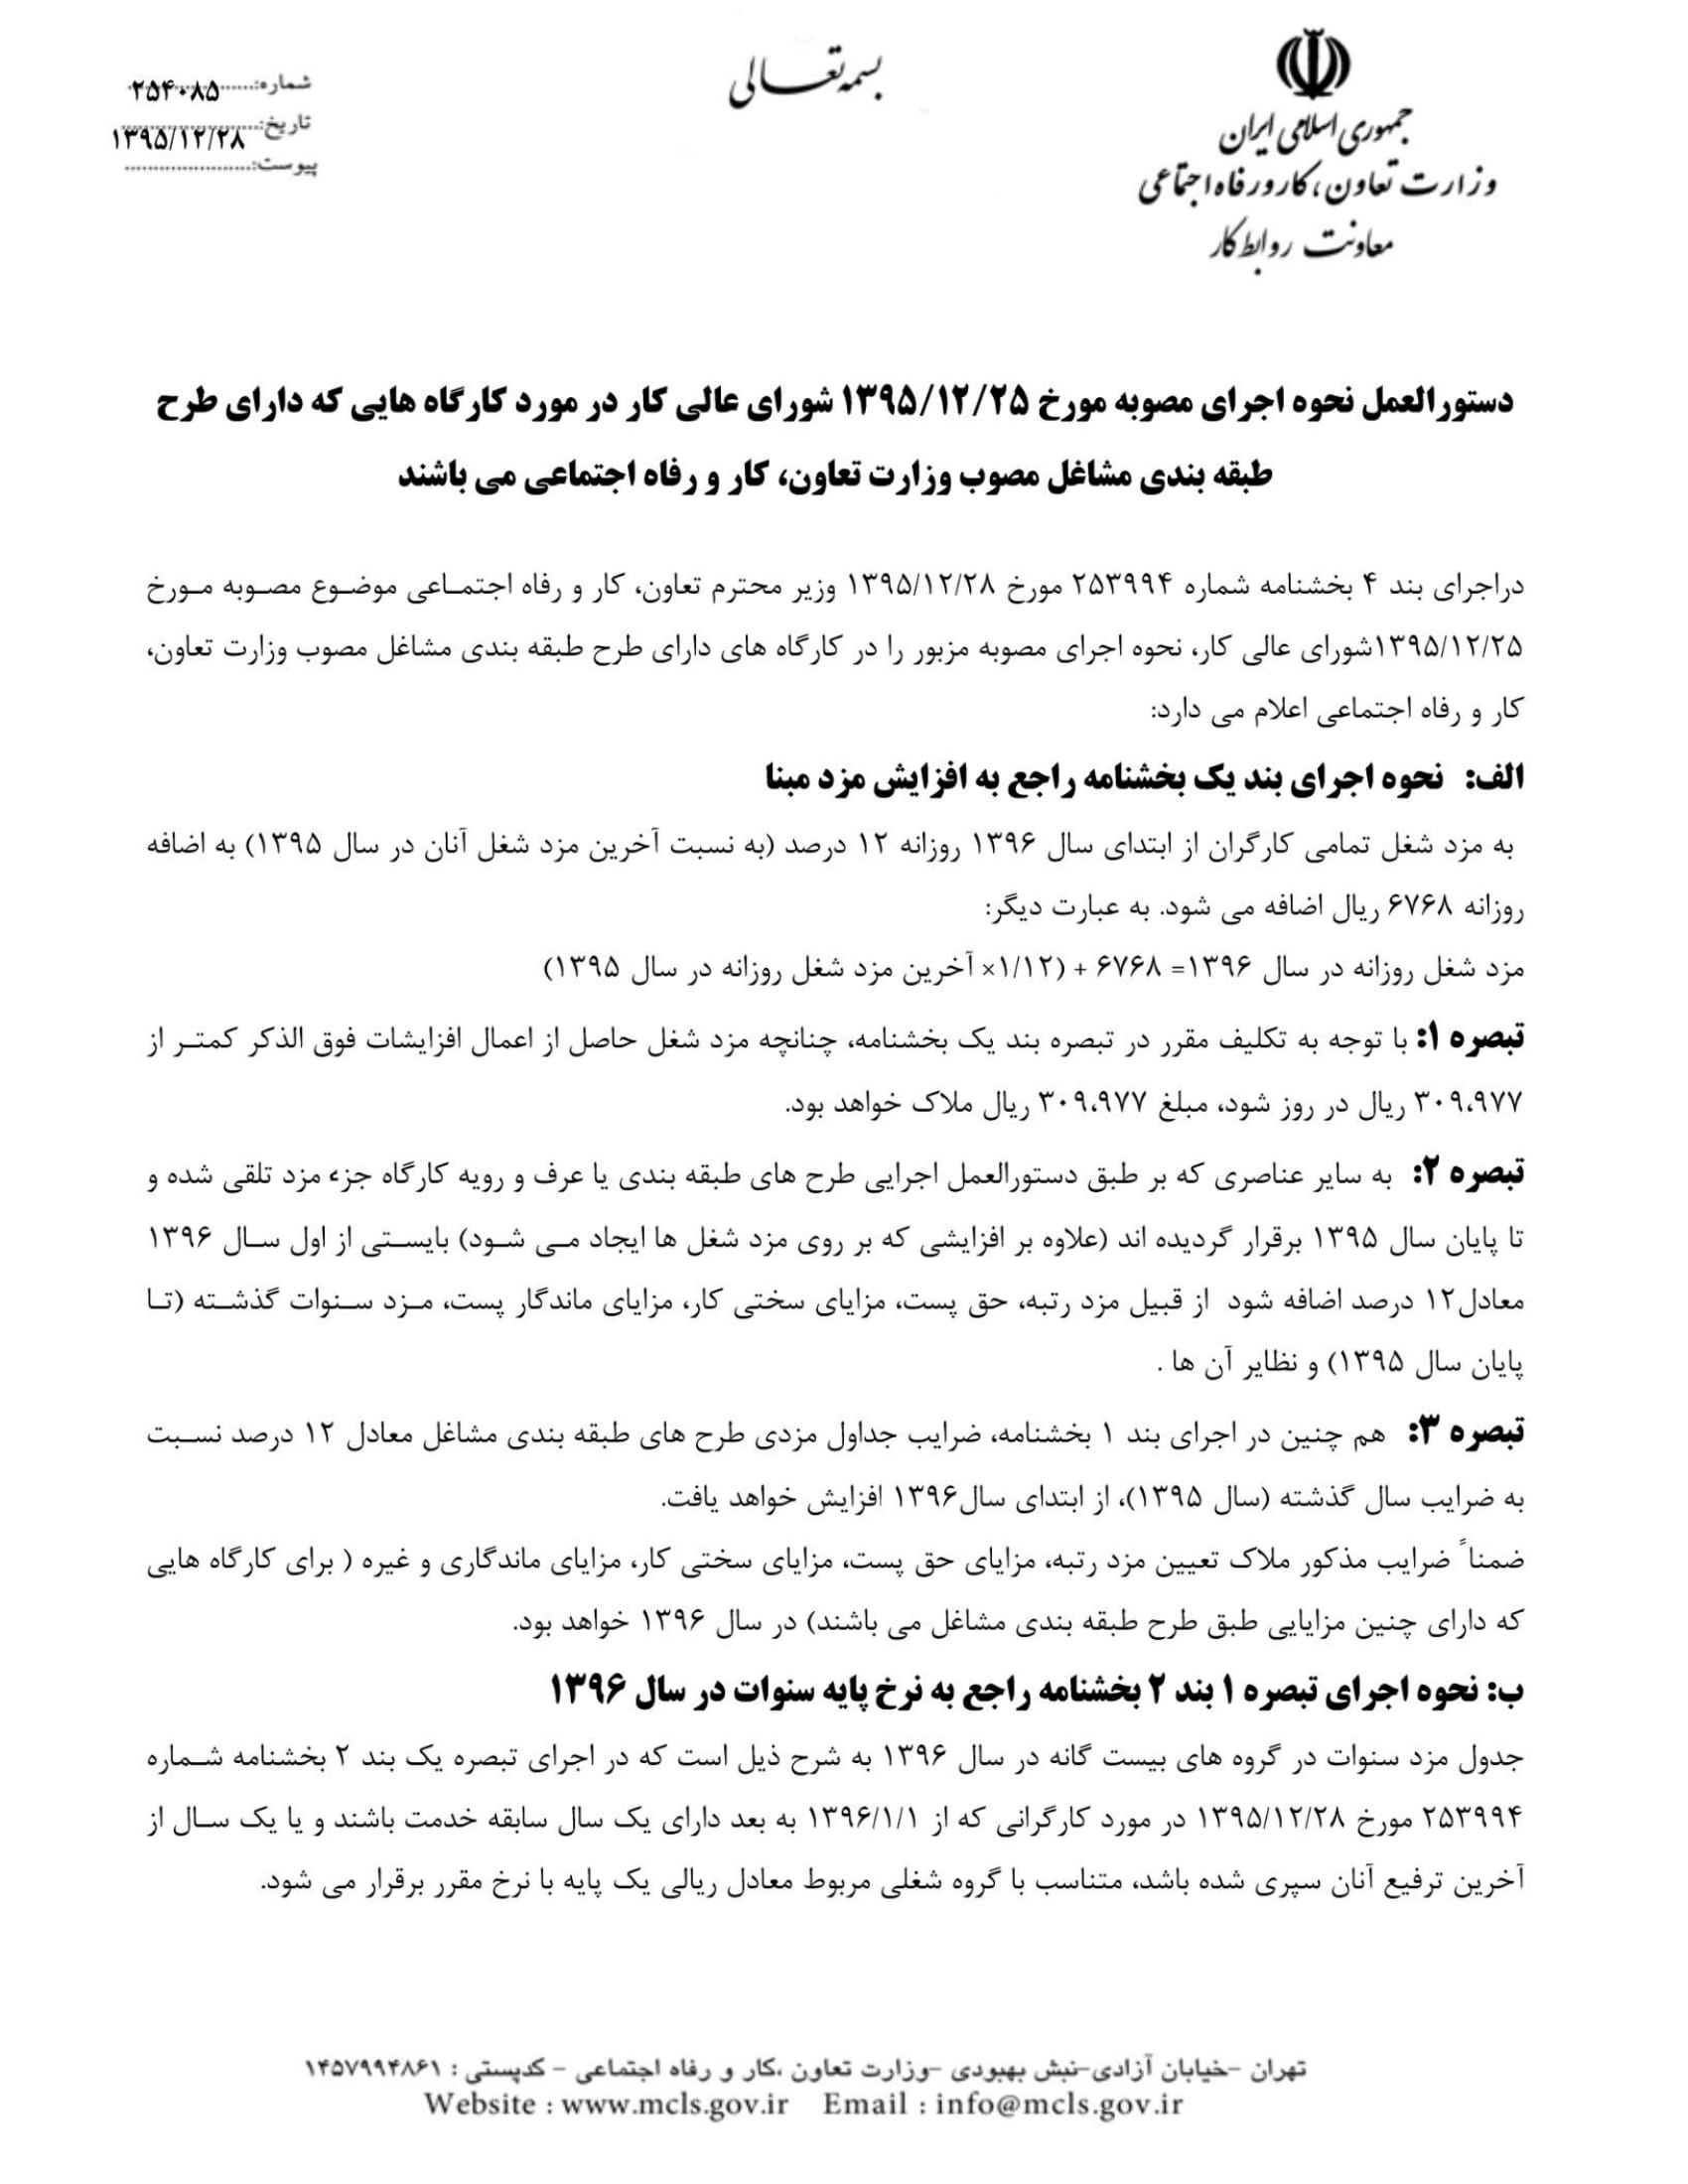 بخشنامه مقام عالی وزارت در خصوص دریافت اخبار و اطلاعات -3